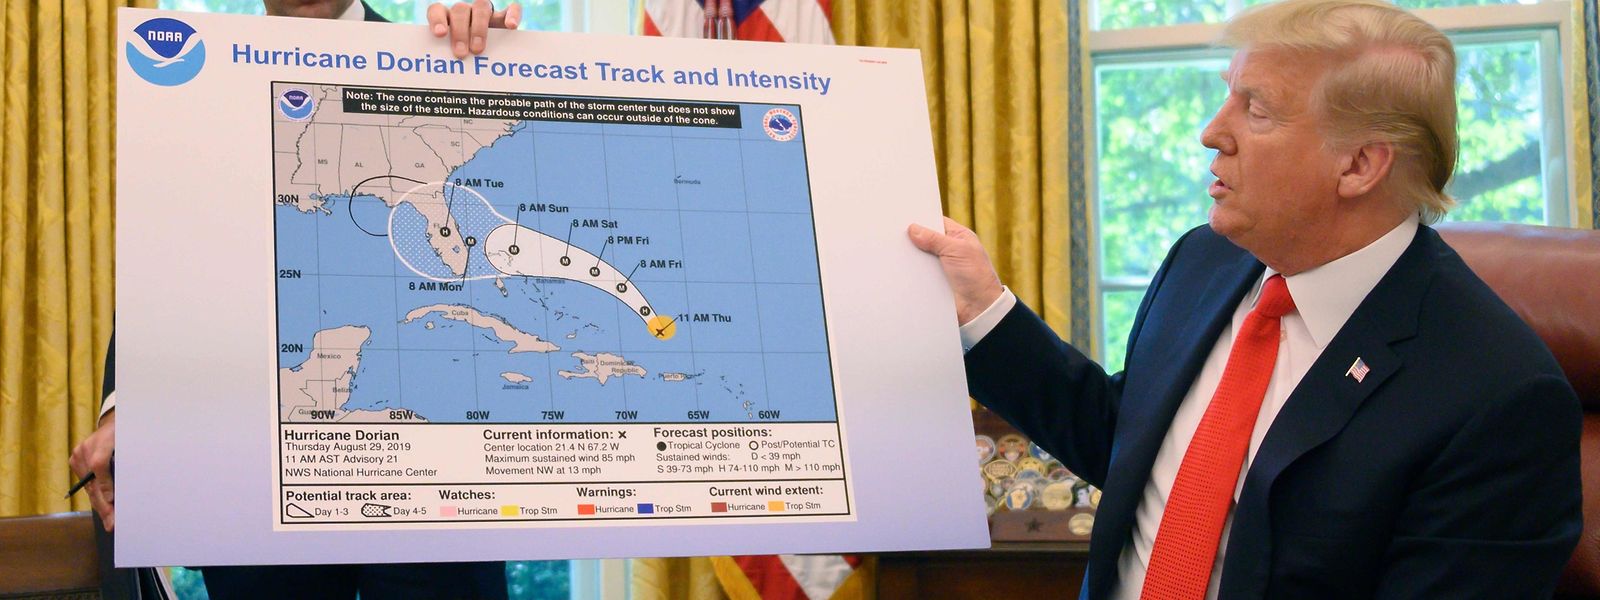 Bei einem Briefing im Oval Office zeigte Trump eine Wetterkarte. Über Alabama wurde die Grafik offenbar nachträglich mit schwarzem Filzstift verändert.